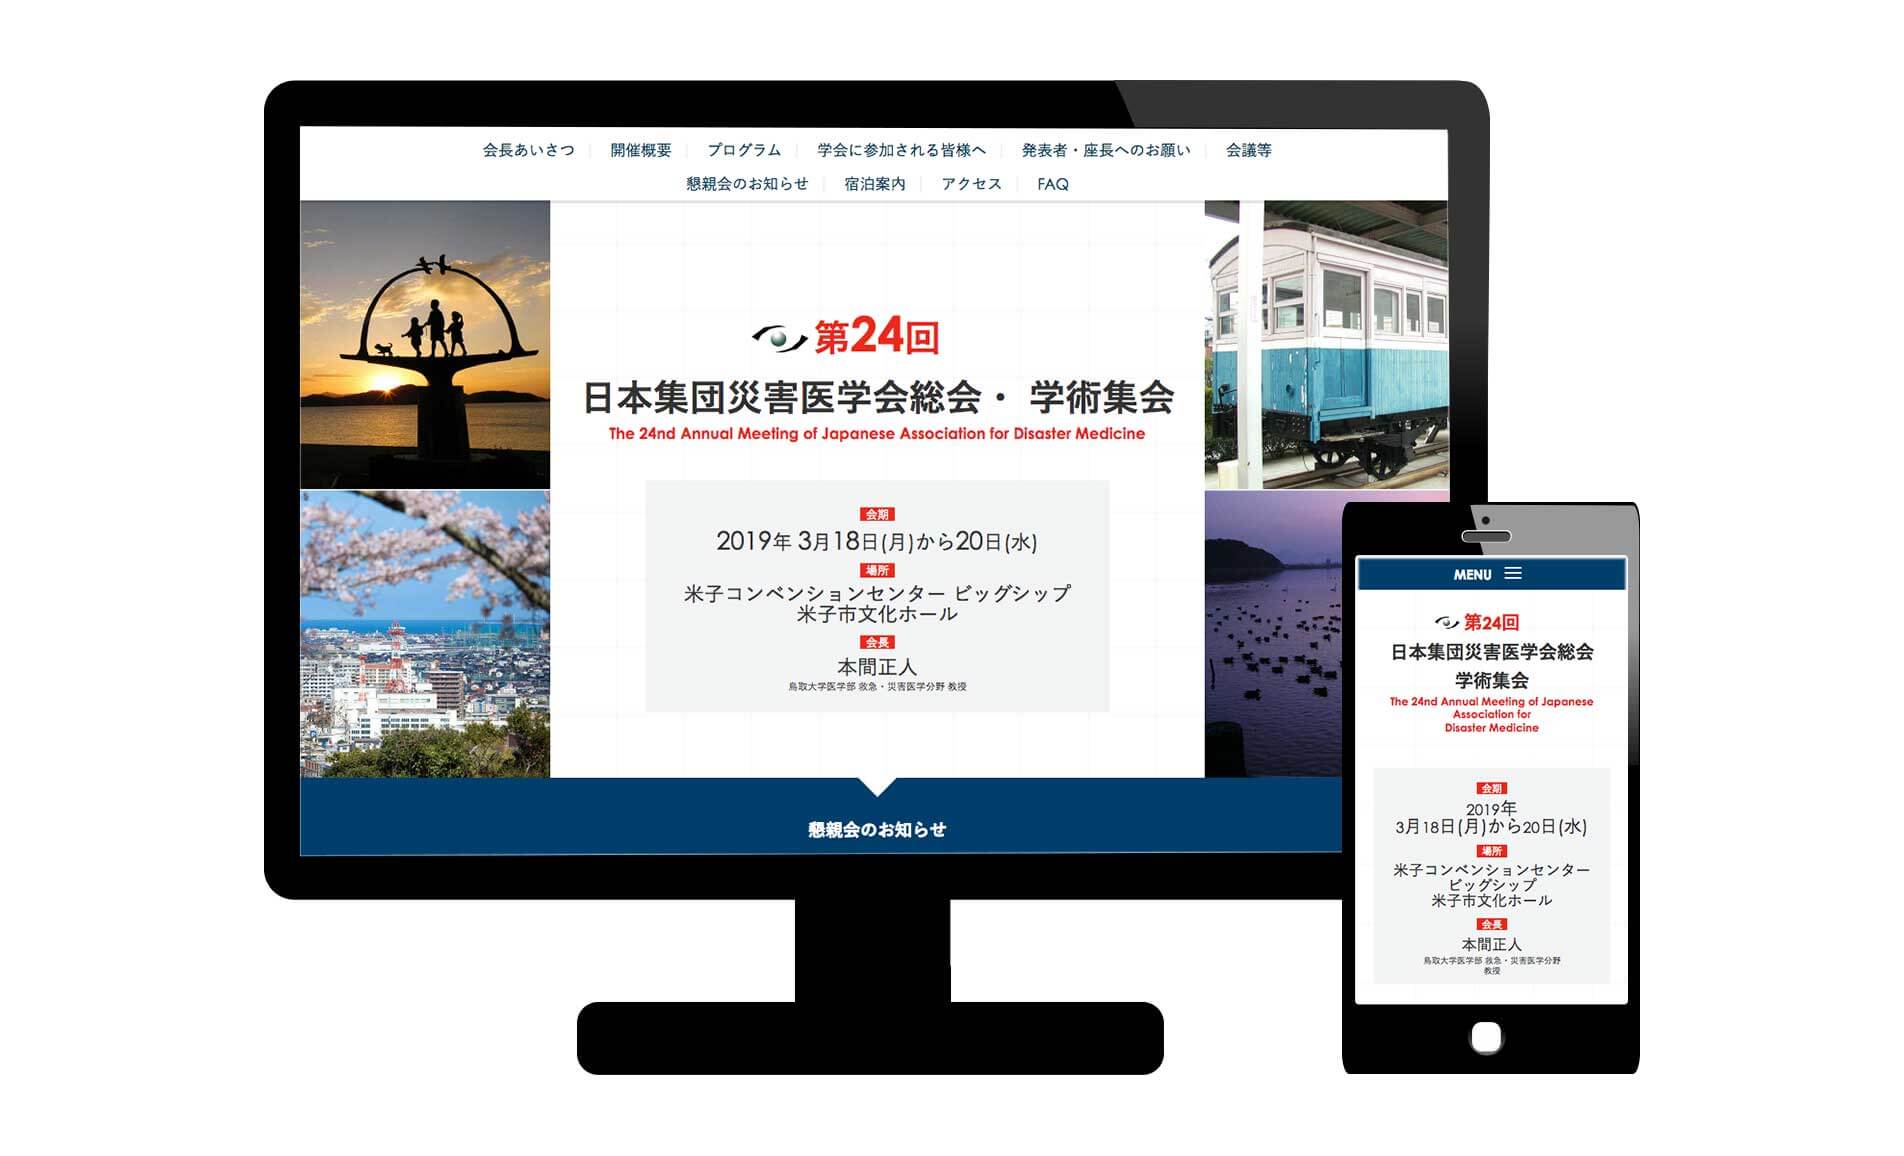 第24回日本集団災害医学会総会・学術集会のウェブサイトを公開